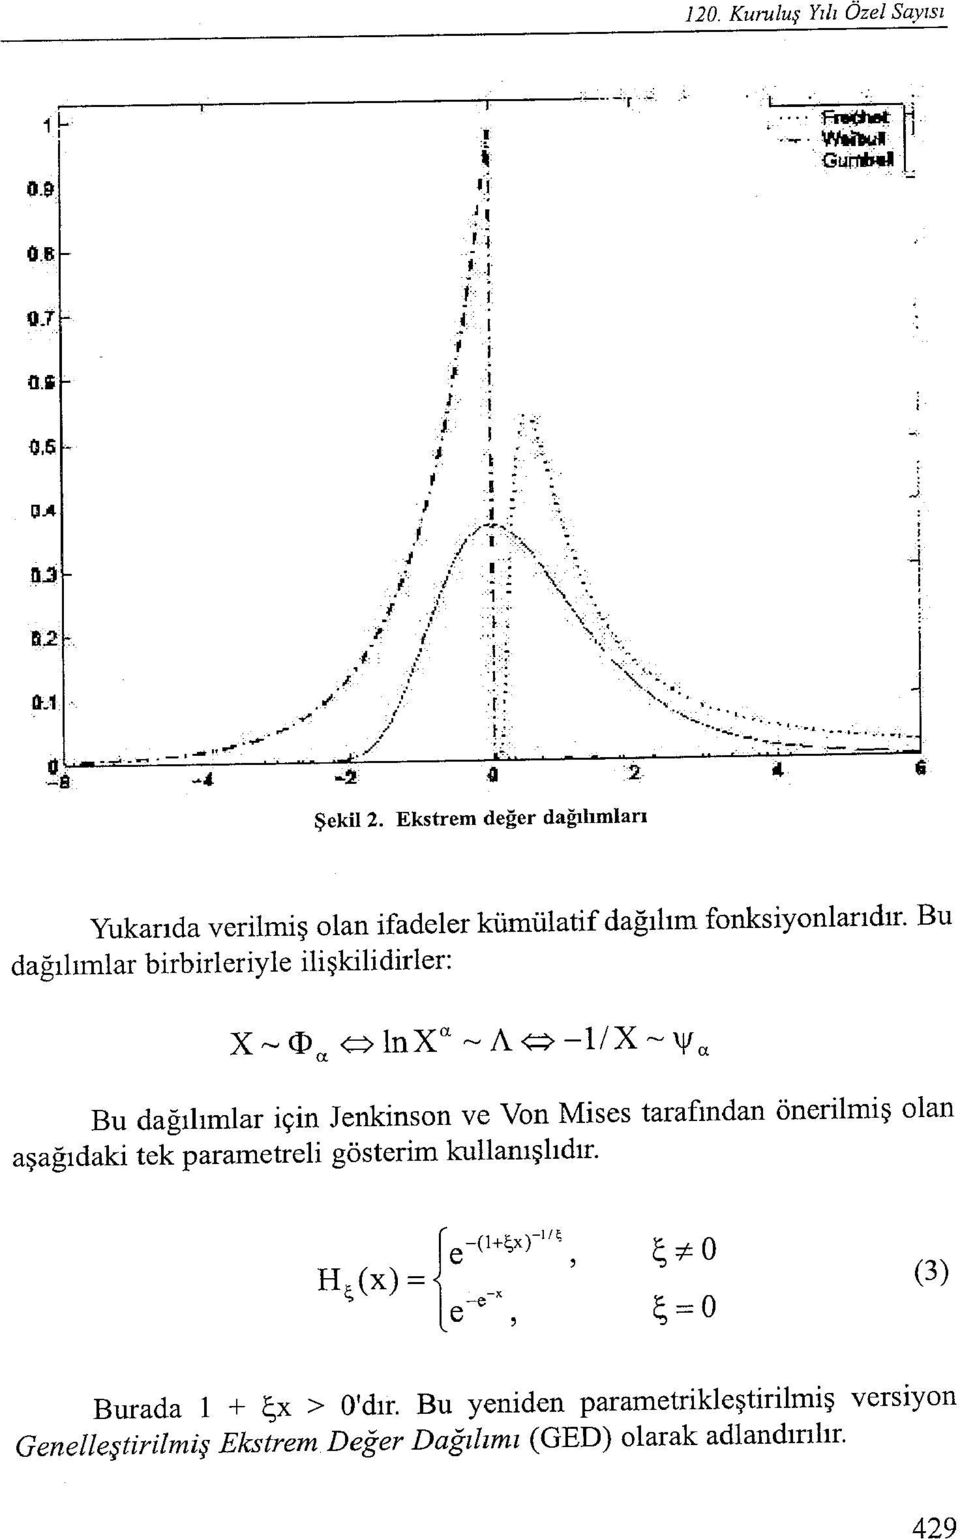 dağılımlar birbirleriyle ilişkilidirler: Bu Bu dağılımlar için Jenkinson ve Von Mises tarafından önerilmiş olan aşağıdaki tek parametreli gösterim kullanışlıdır.